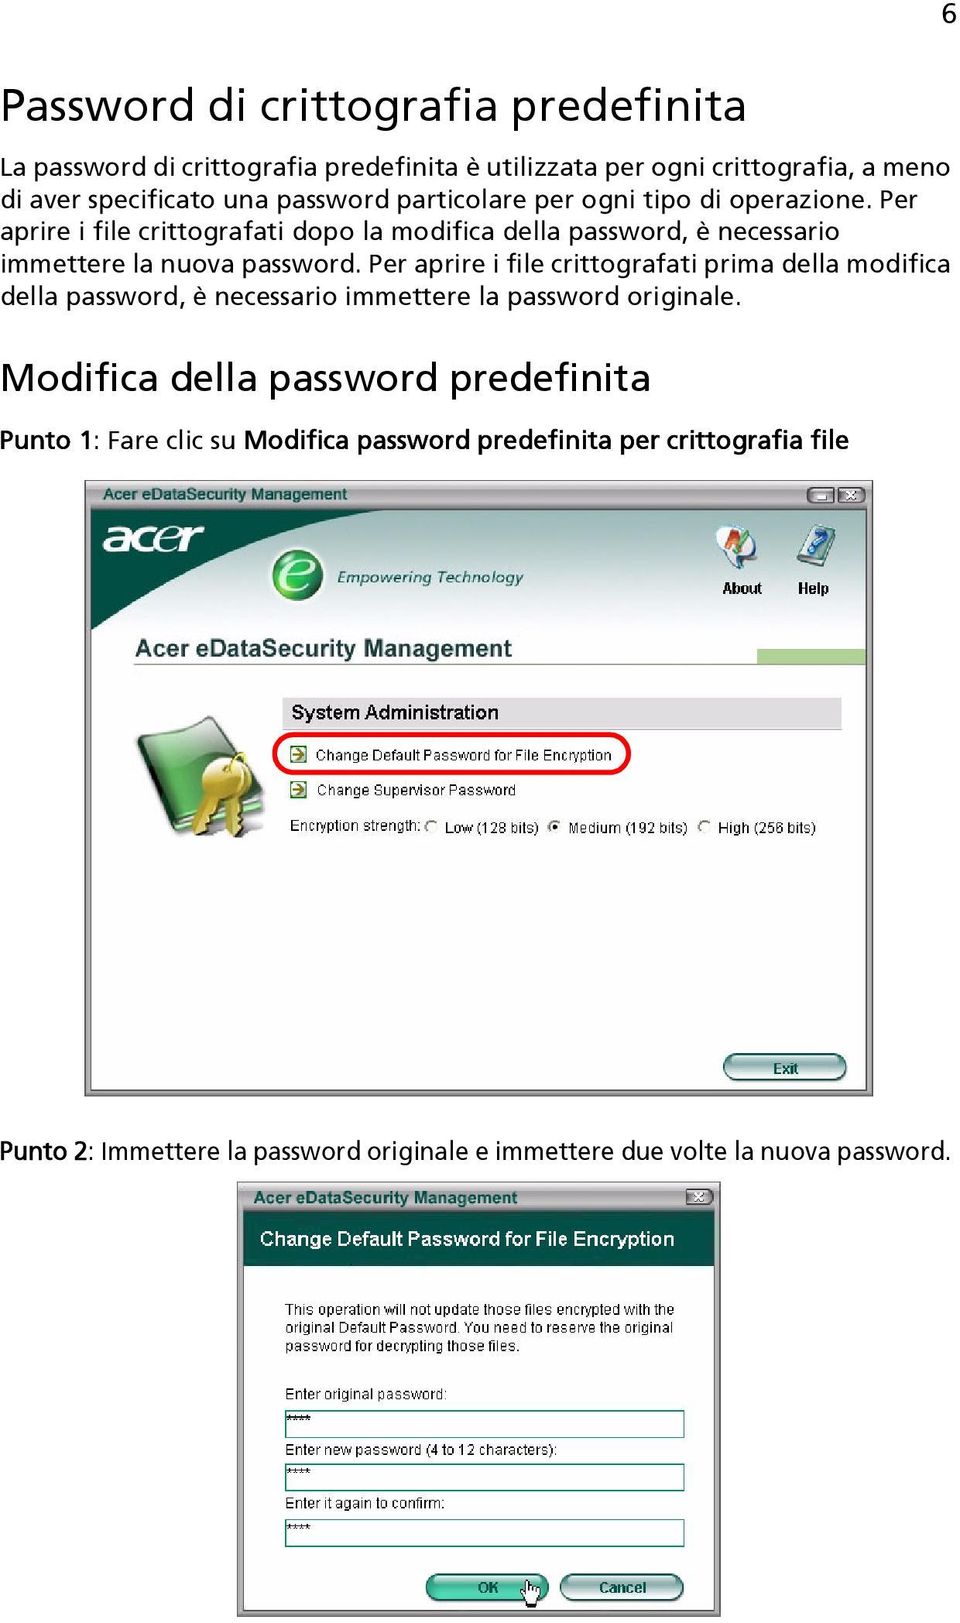 Per aprire i file crittografati prima della modifica della password, è necessario immettere la password originale.